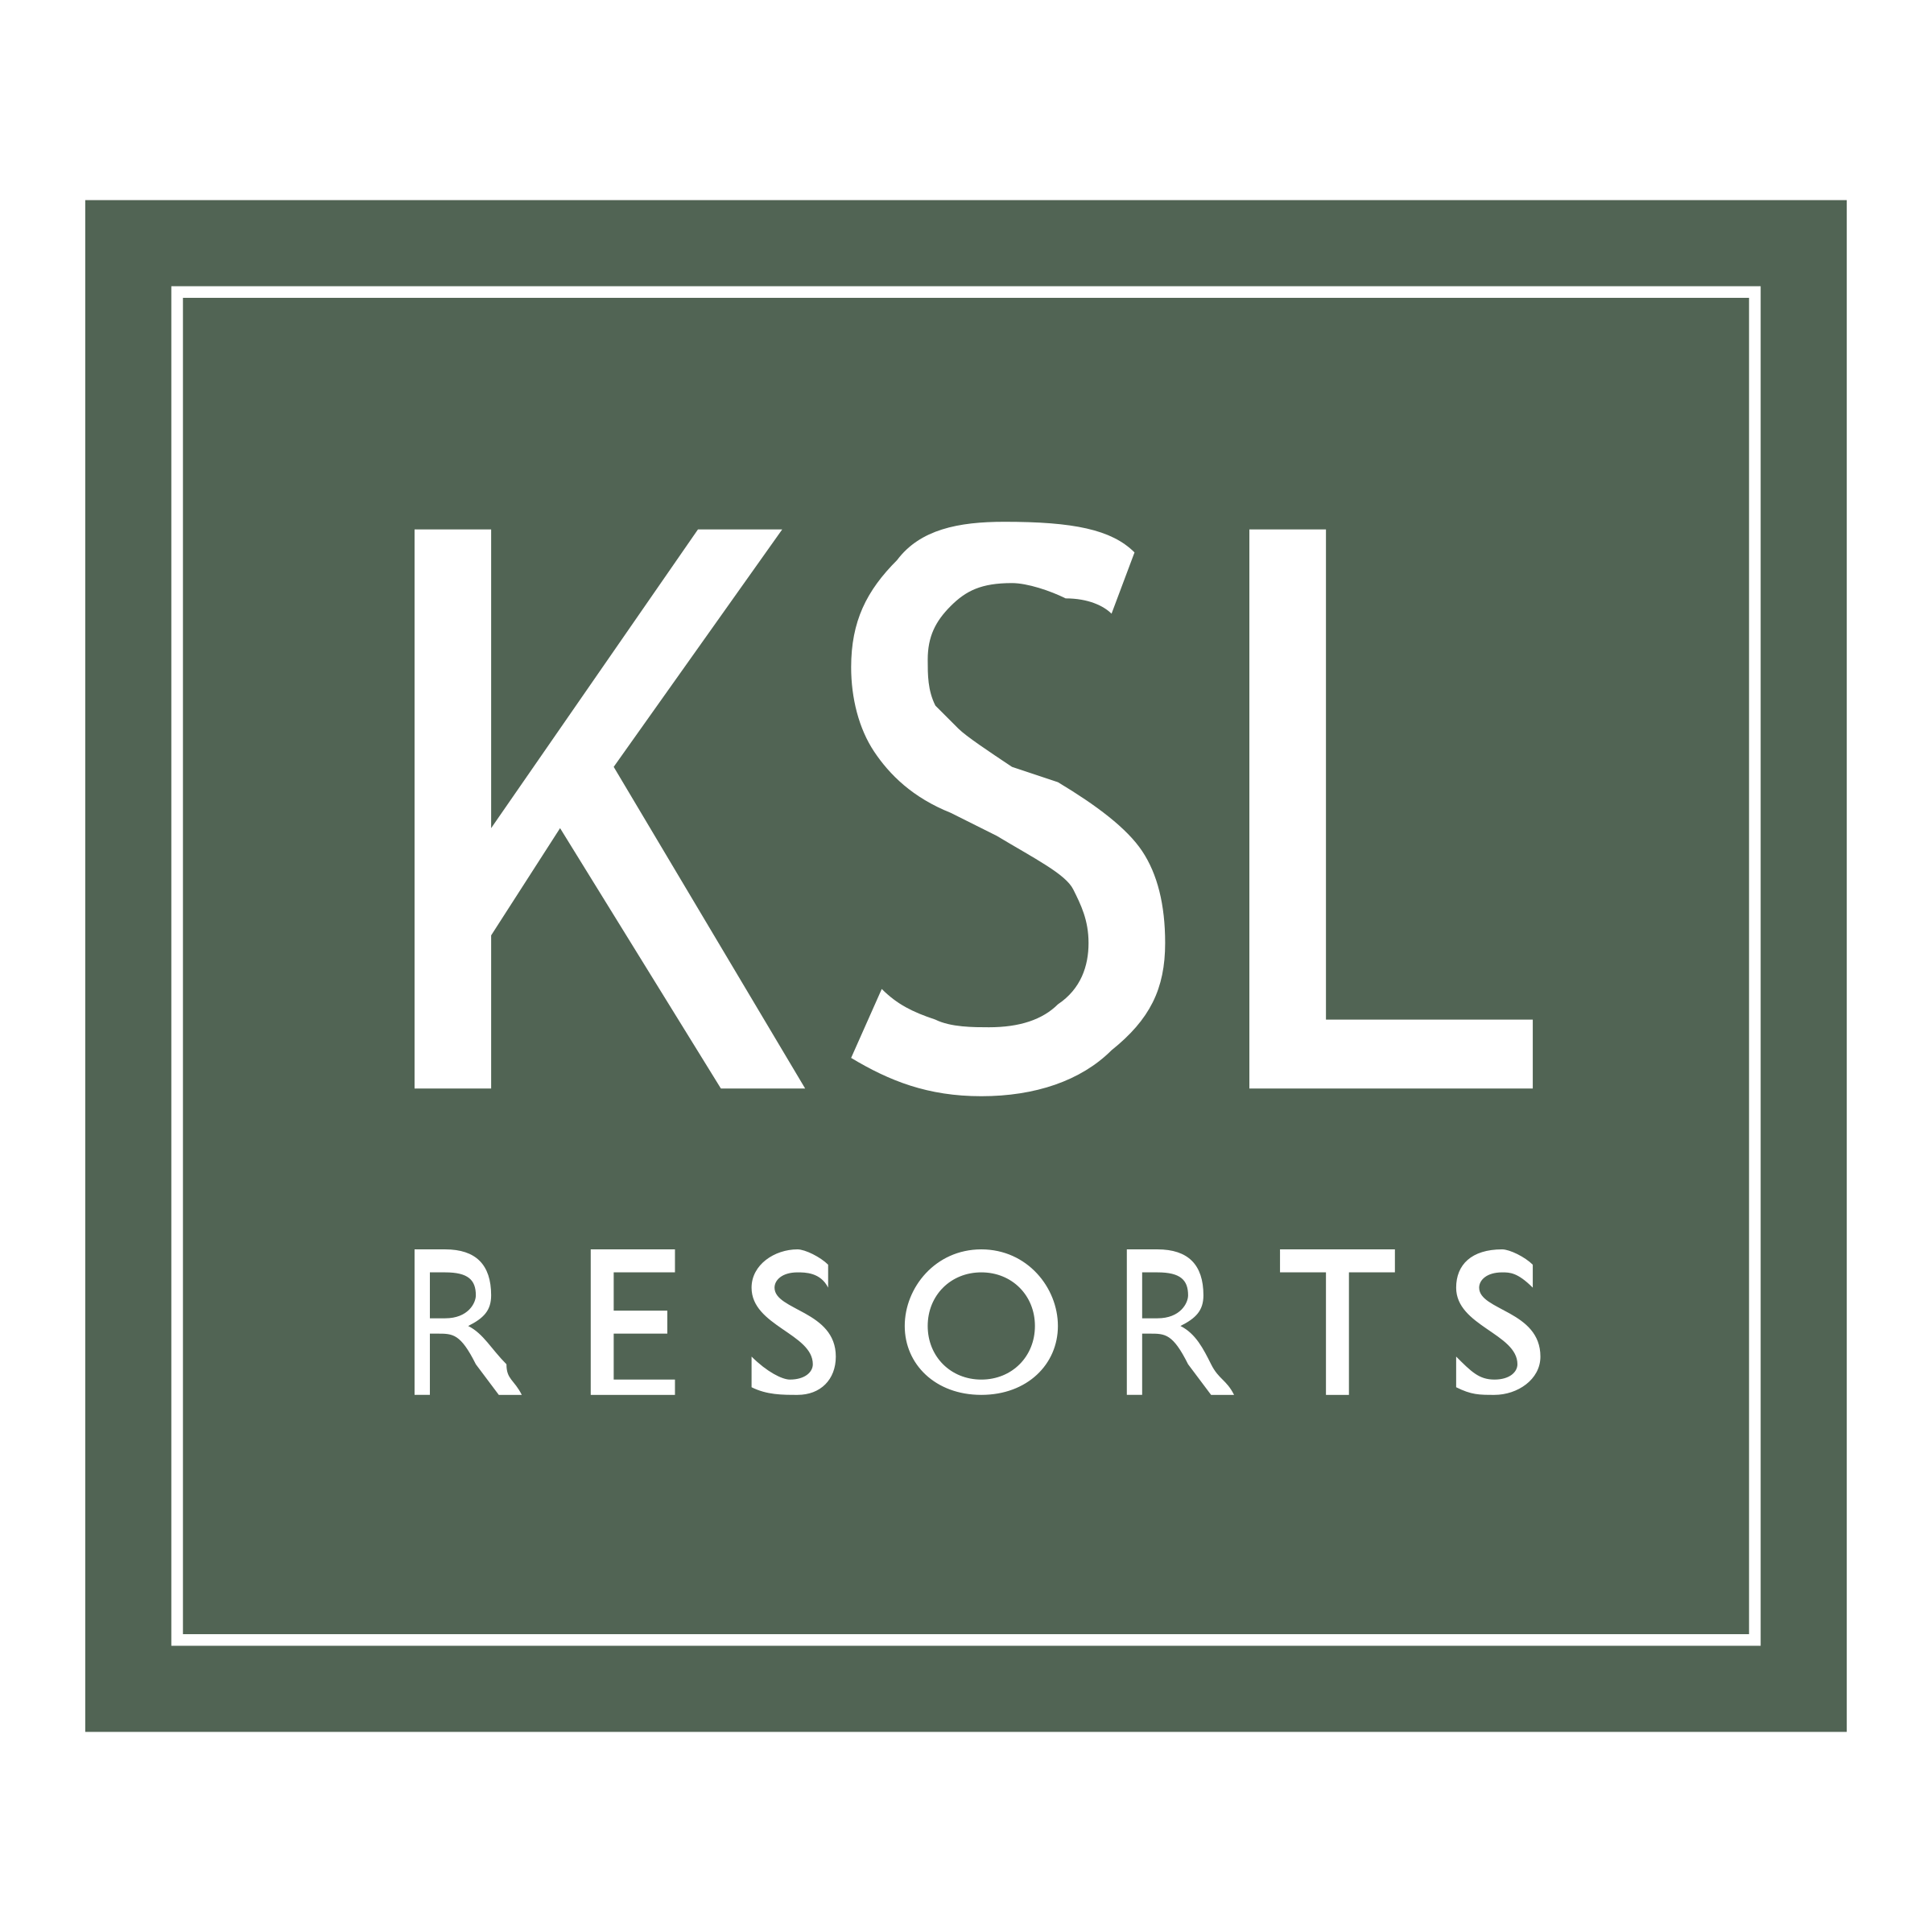 KSL Logo - KSL Resorts Logo PNG Transparent & SVG Vector